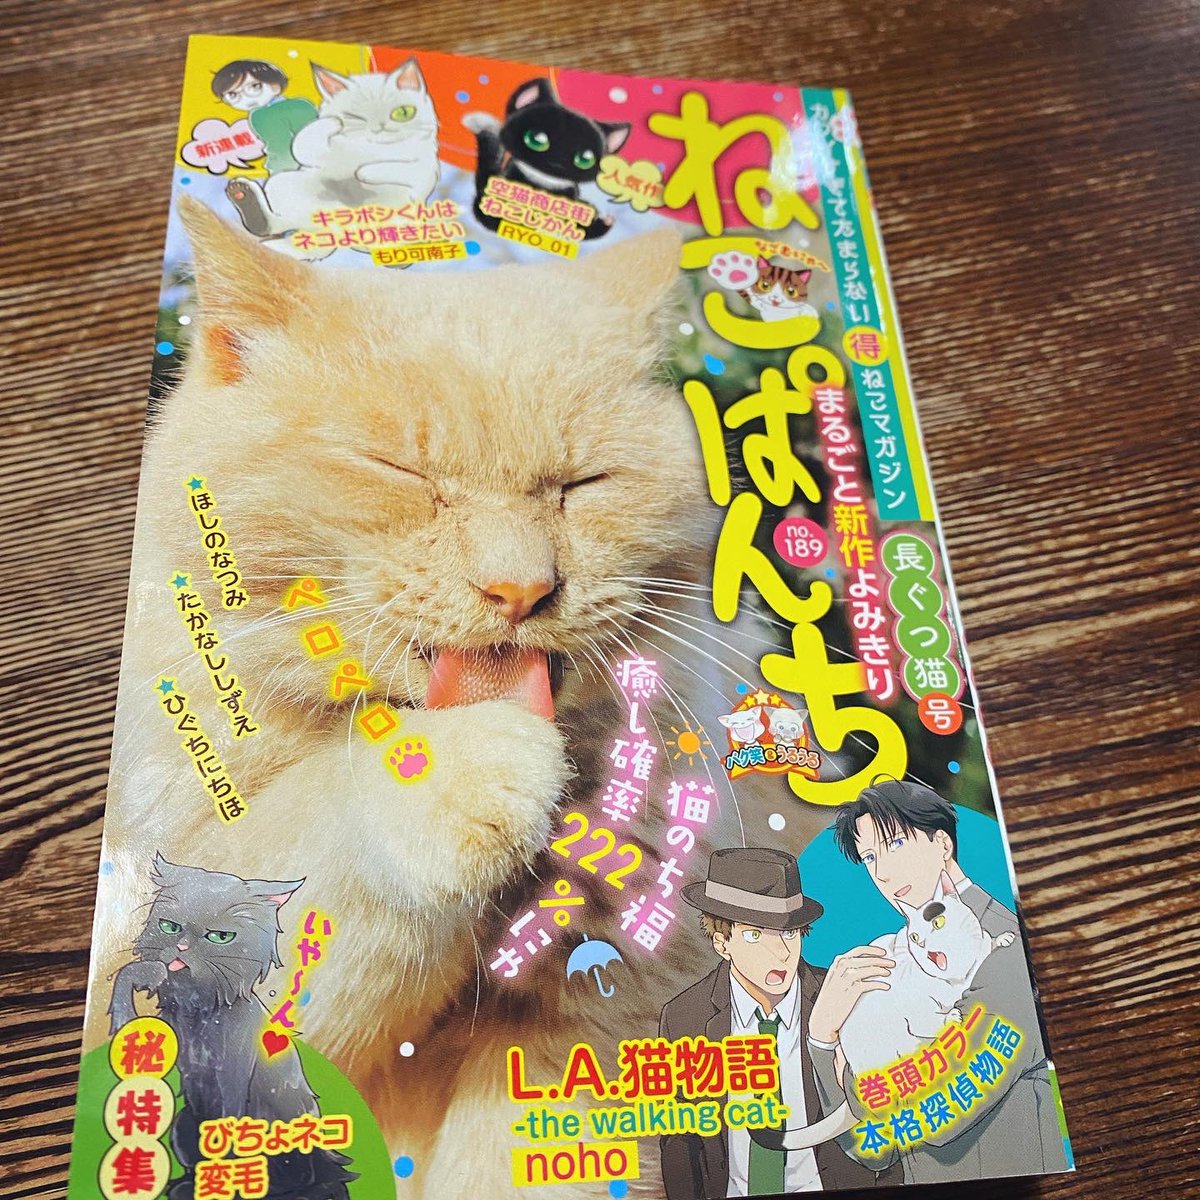 ねこぱんち本日発売です。
「じっちゃんと猫の住む街」は、ぴゃ〜な赤ちゃん猫が。
よろしくお願いいたします。 